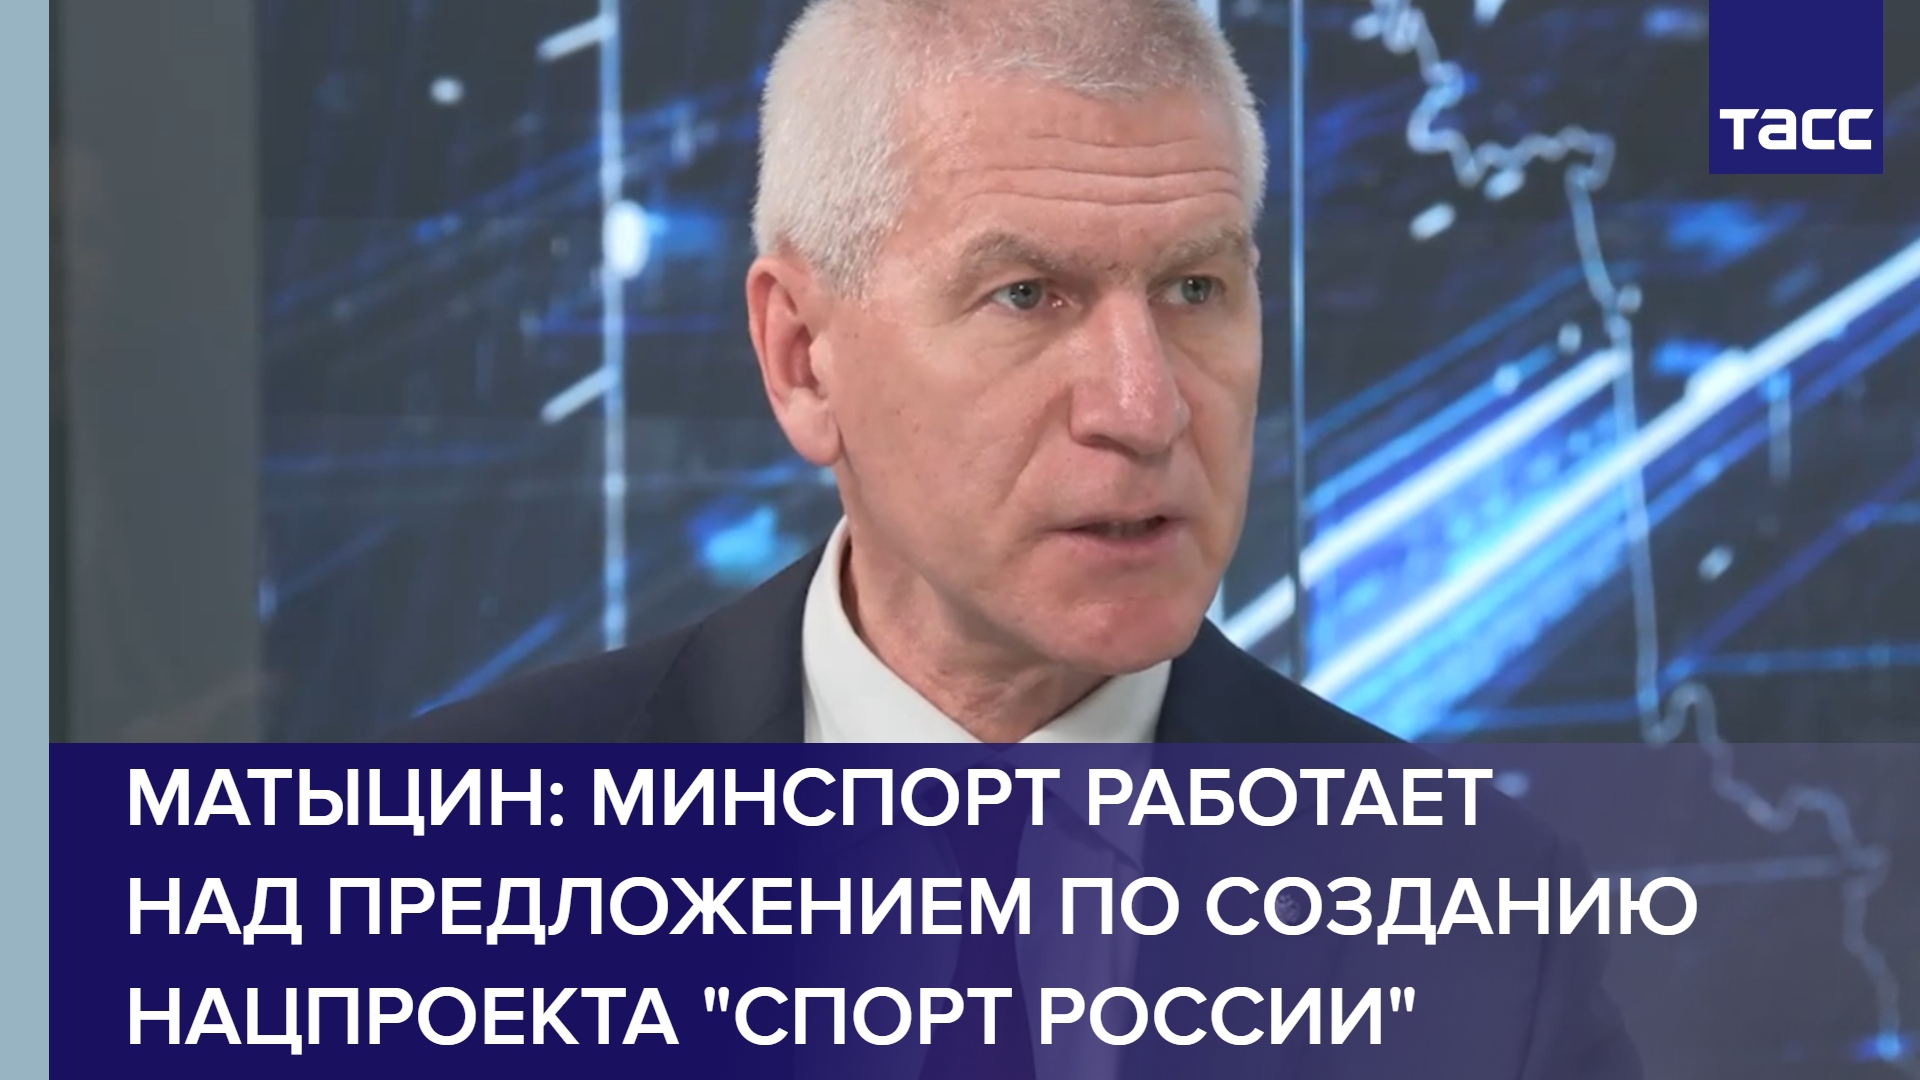 Матыцин: Минспорт работает над предложением по созданию нацпроекта "Спорт России" #shorts